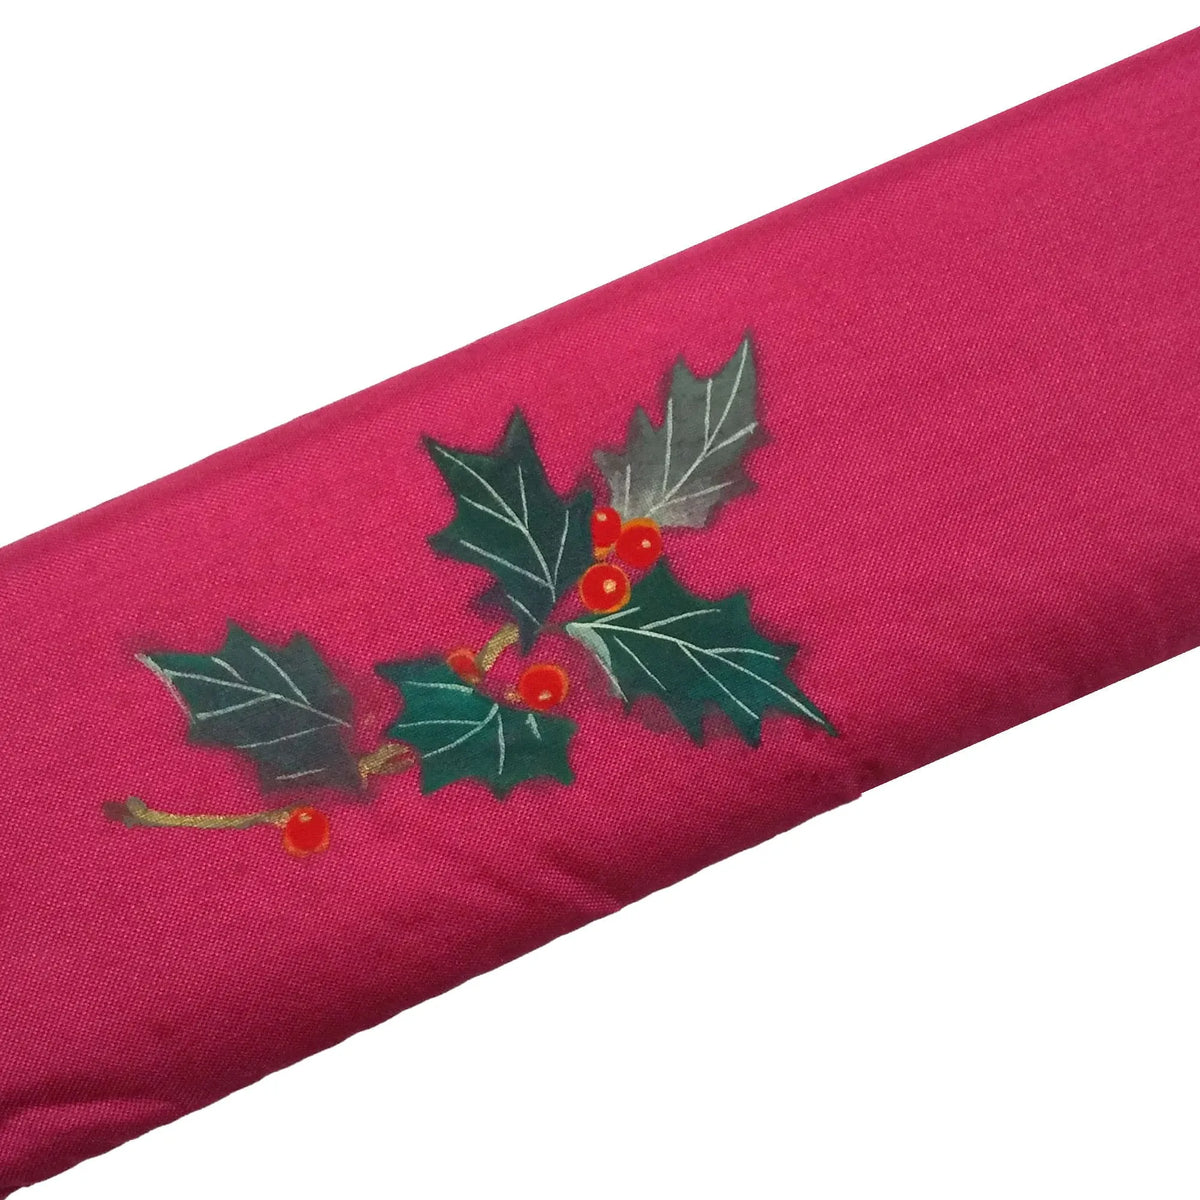 Christmas wreath illustration on silk fan, hand-painted + silk fan